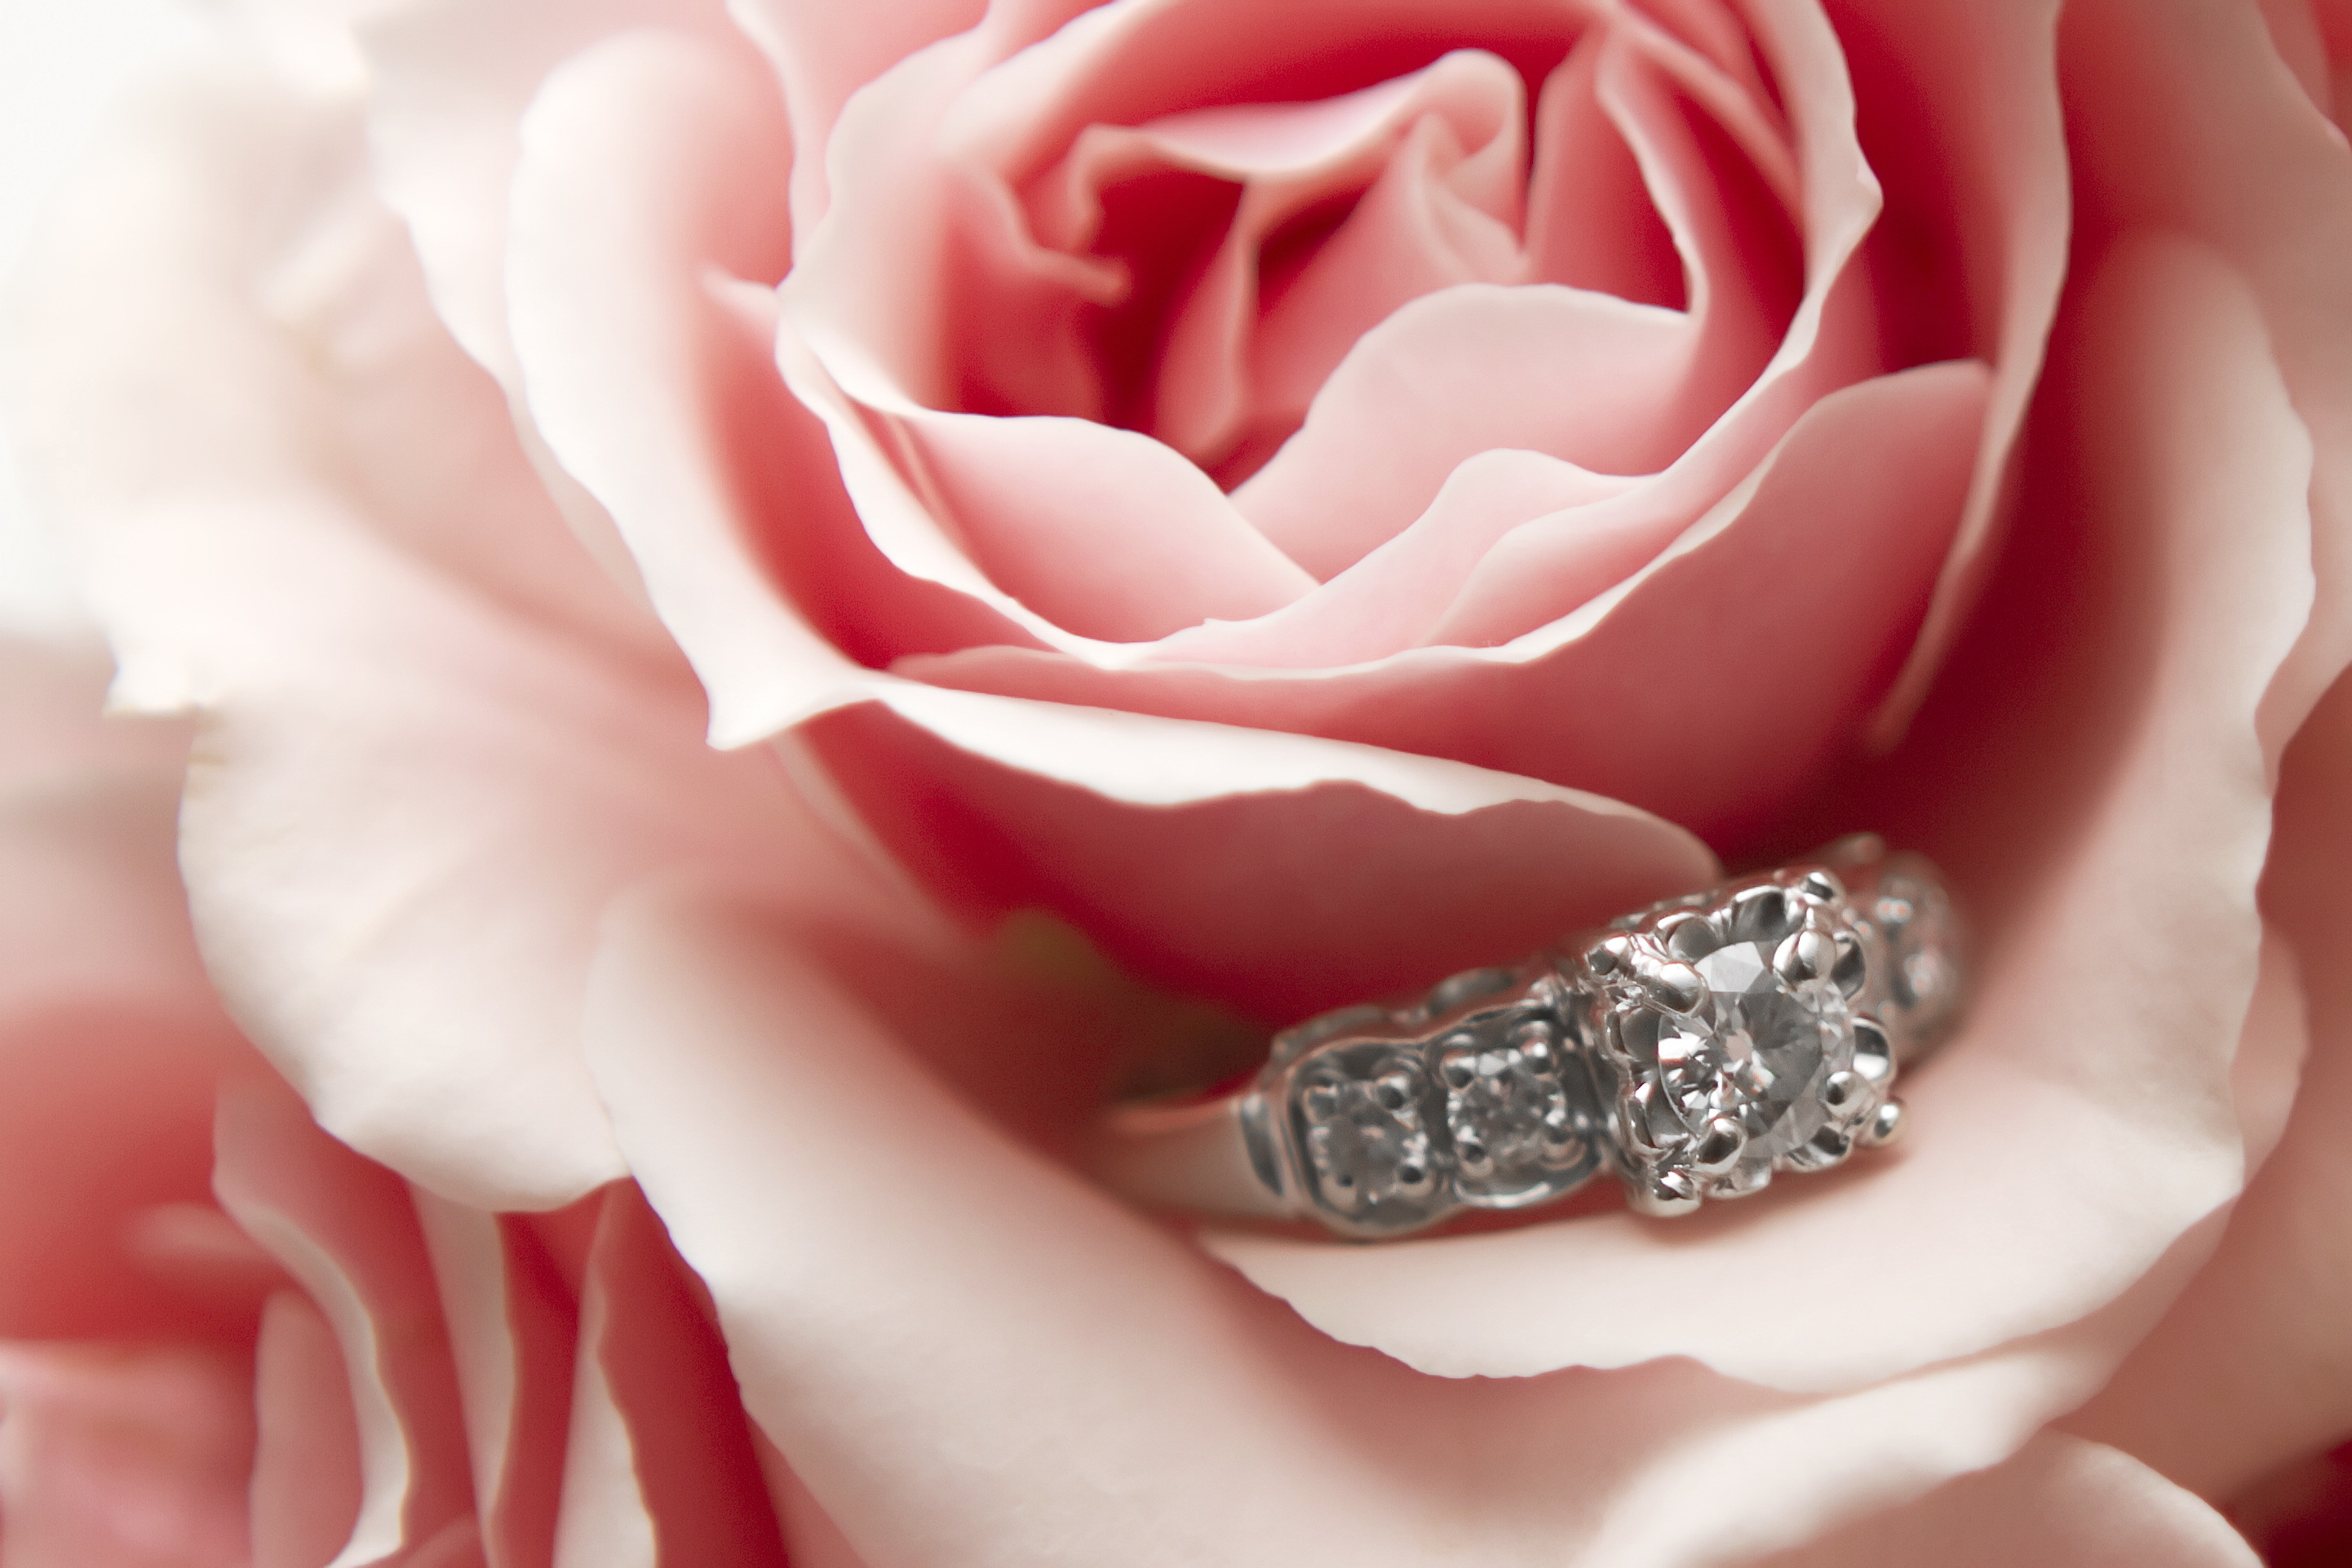 Фото кольца и цветов. Красивые кольца. Кольцо цветы. Розы и драгоценности. Розы и колечко.